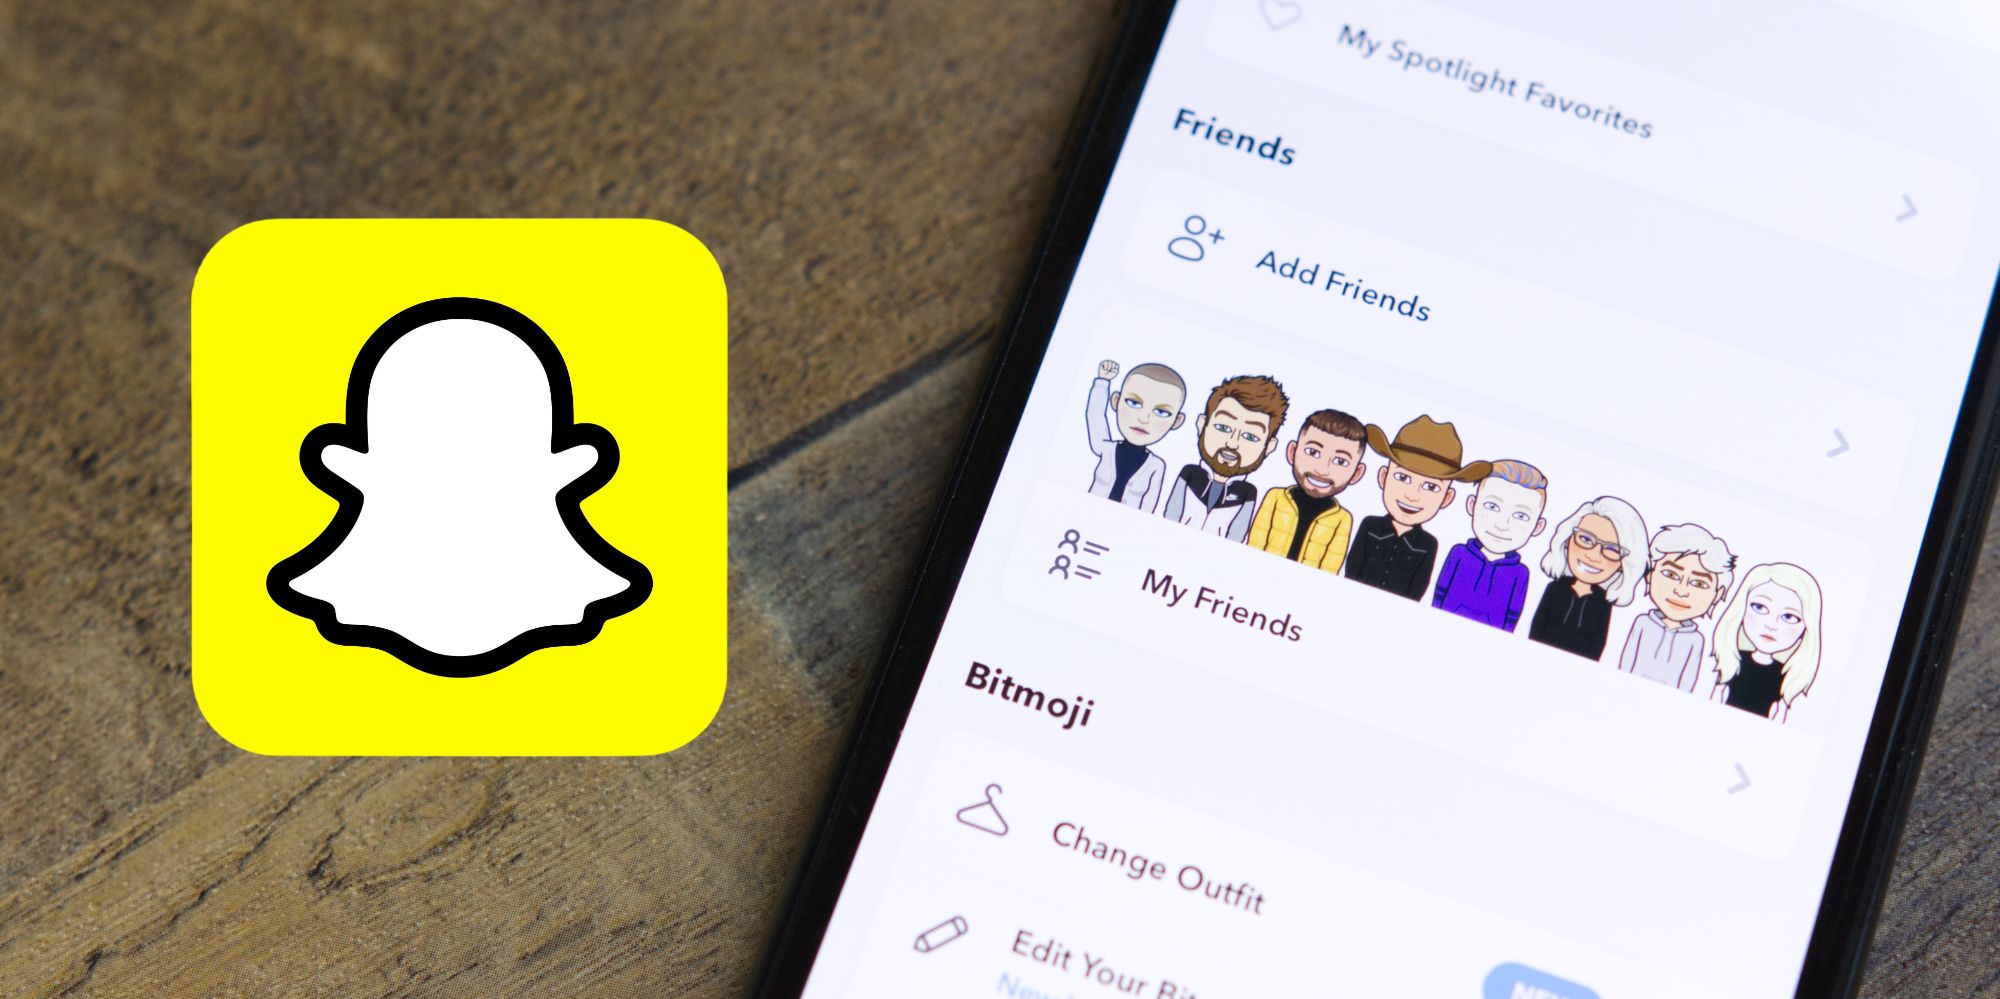 Friends list in Snapchat app